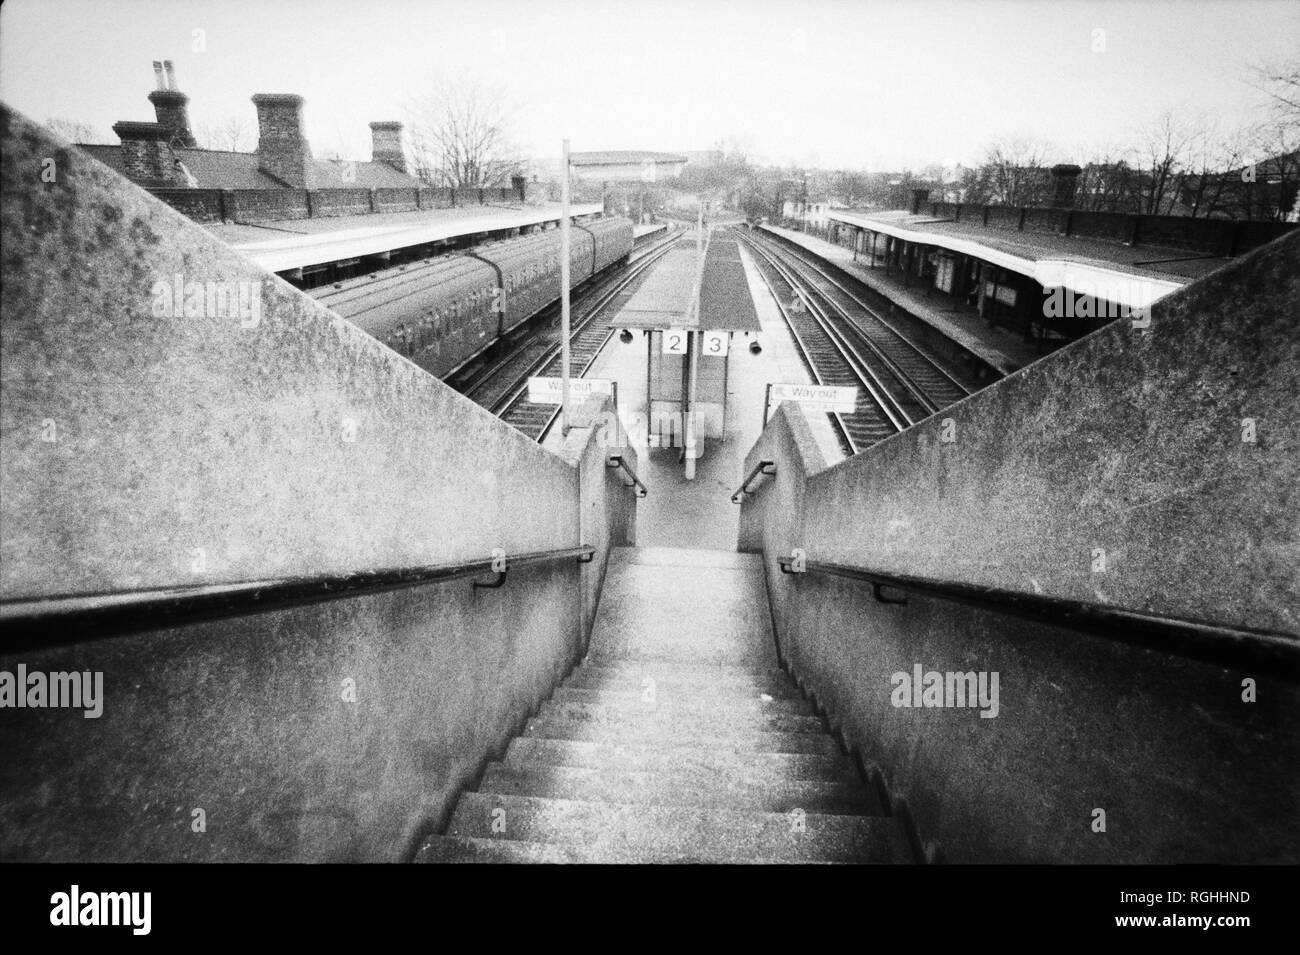 Archive image monochrome de la plate-forme d'une gare ferroviaire du sud de Londres avec train à porte en slam en attente à la plate-forme, 1979, Londres, Angleterre Banque D'Images